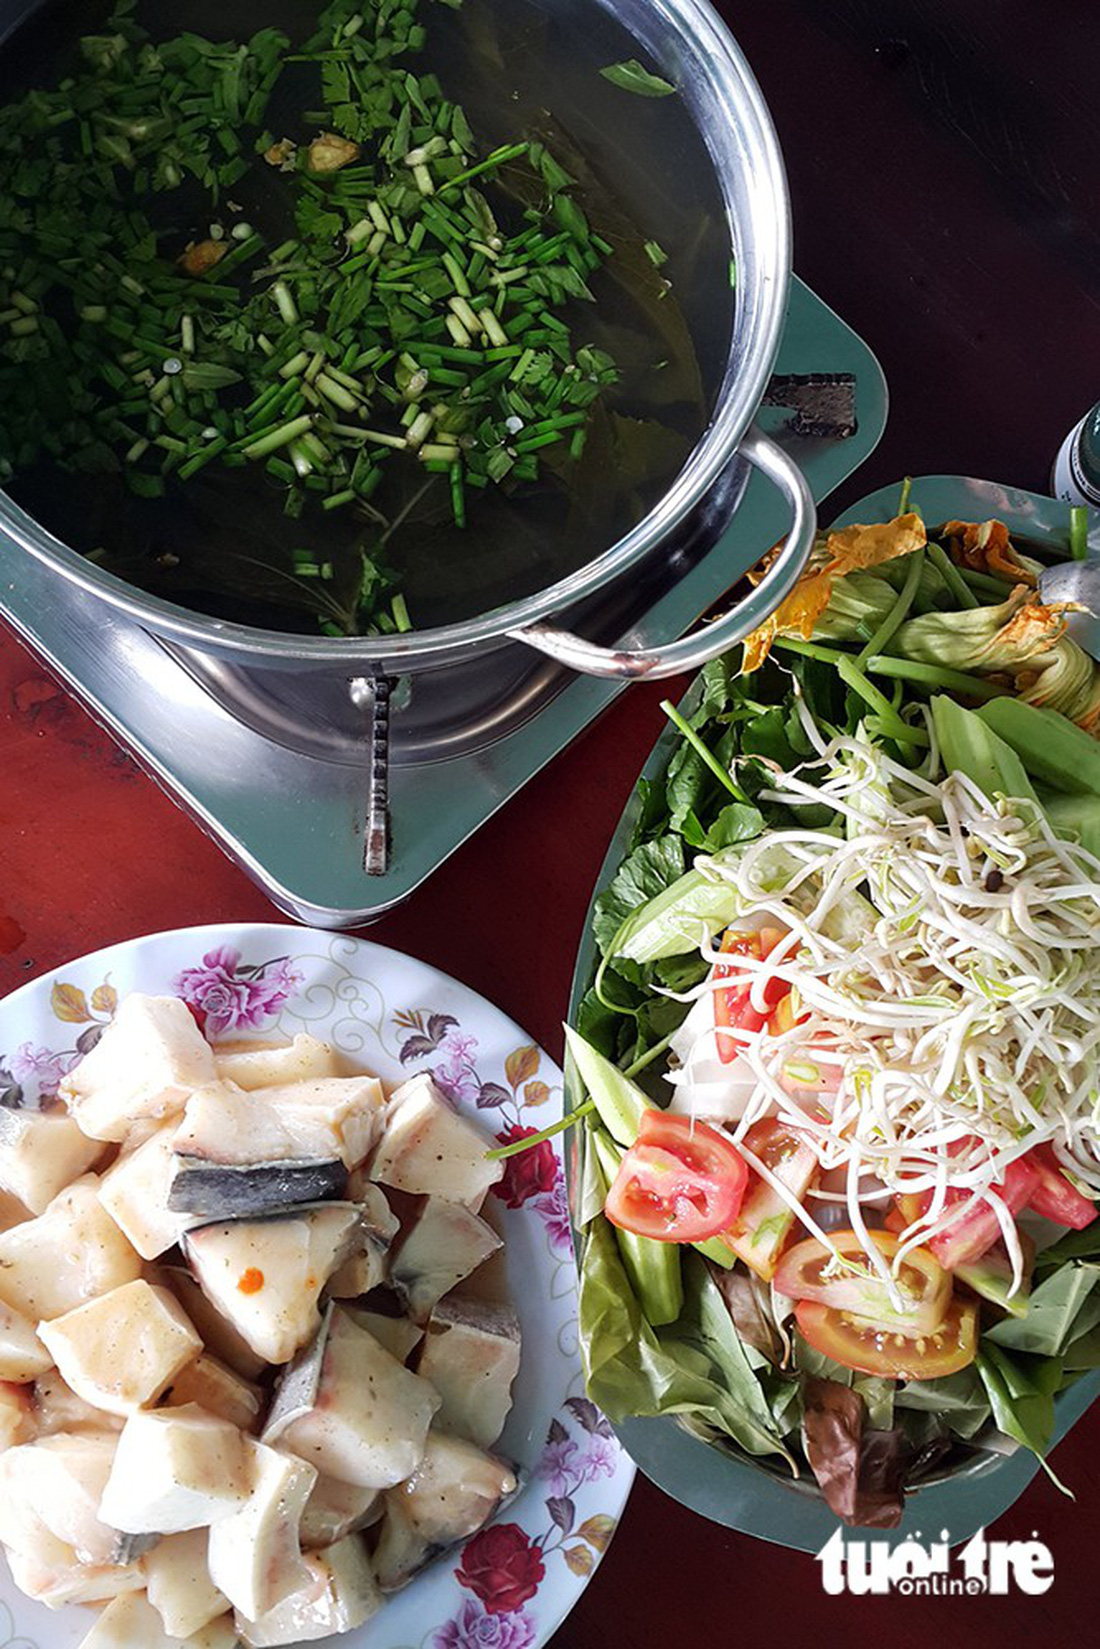 Chu du Bình Thuận với 1 triệu đồng, đến chỗ lạ, ăn món ngon - Ảnh 5.